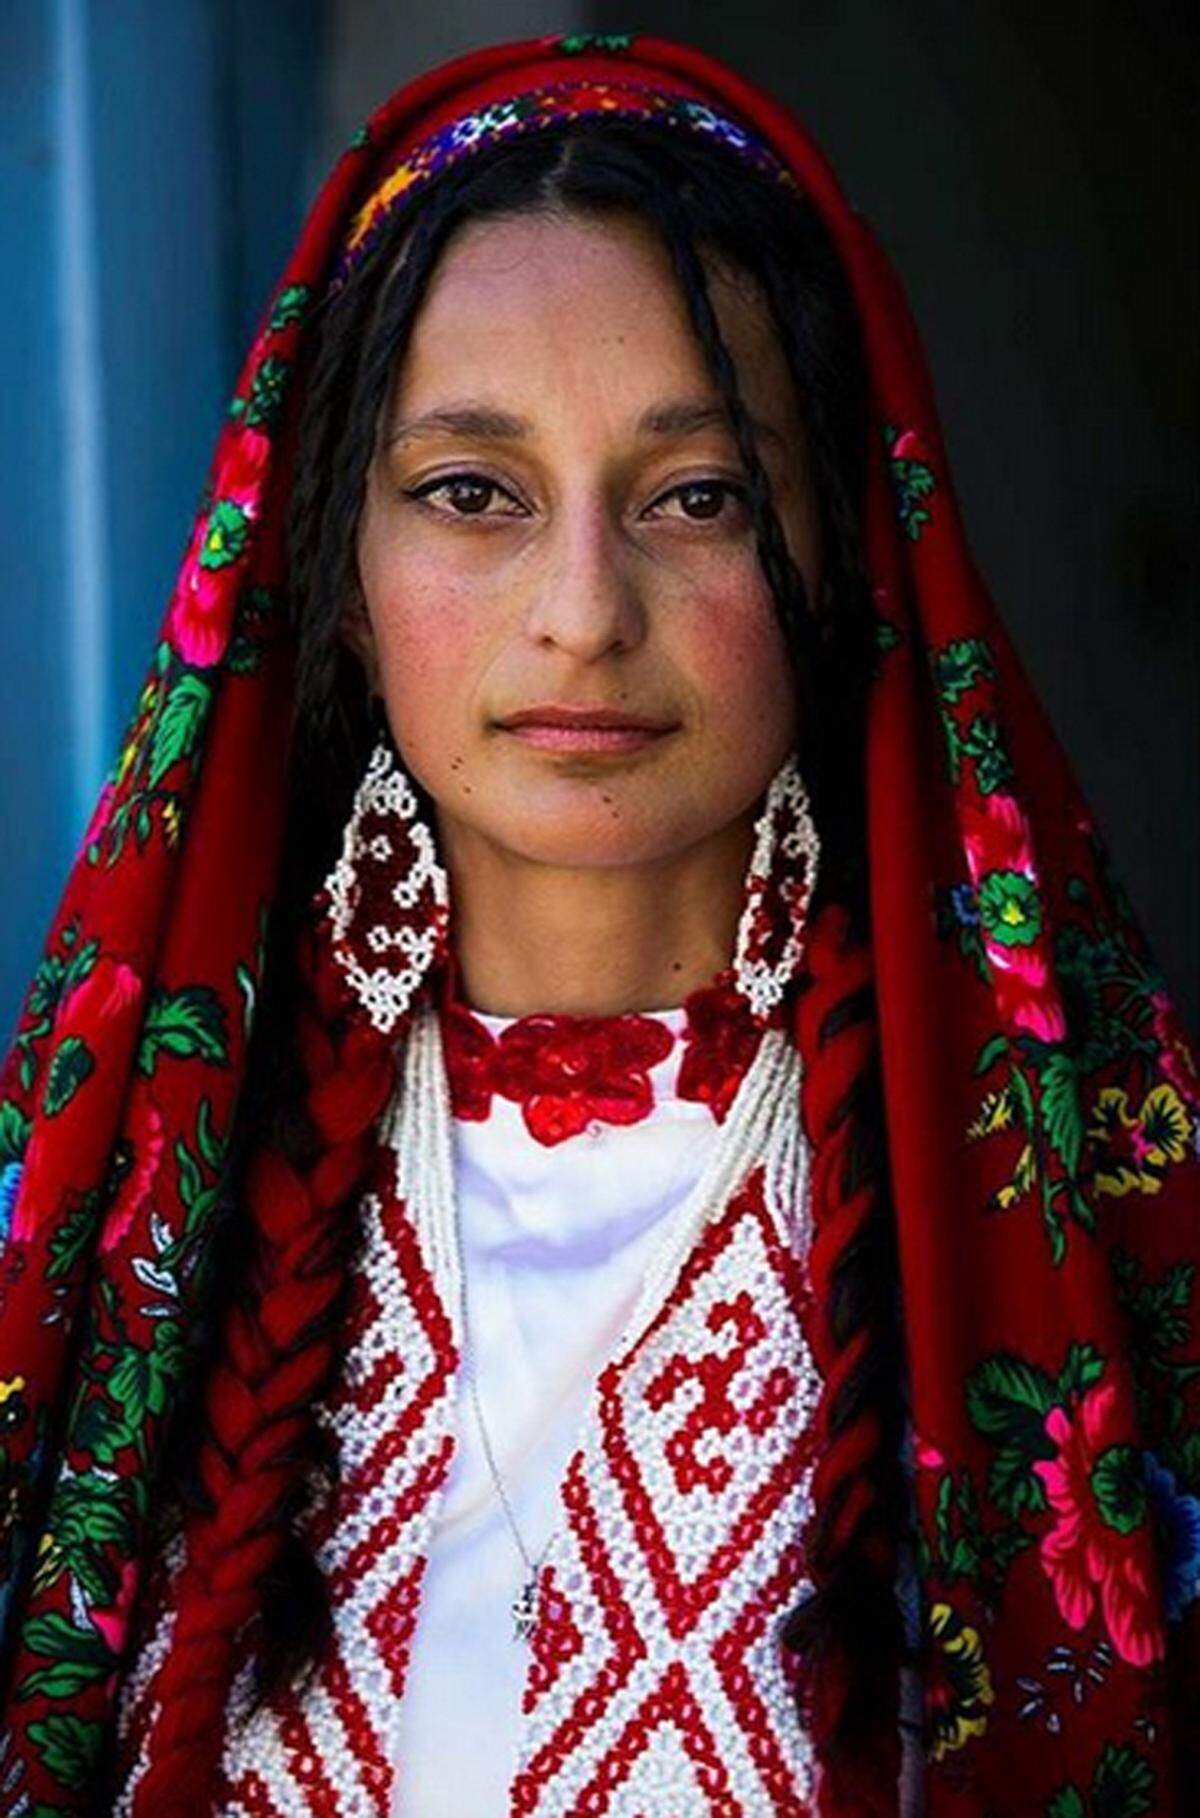 "Mein Ziel ist es für viele Jahre weiterzumachen und Schönheit in allen Ländern des Globus zu studieren. Und wenn möglich, das Atlas-Projekt weltweit bekannt zu machen und als Inspiration für Frauen zu dienen", schreibt sie auf ihrer Homepage.  Dieses Bild ist Berg-Badachschan, einer autonomen Region in Tadschikistan.    